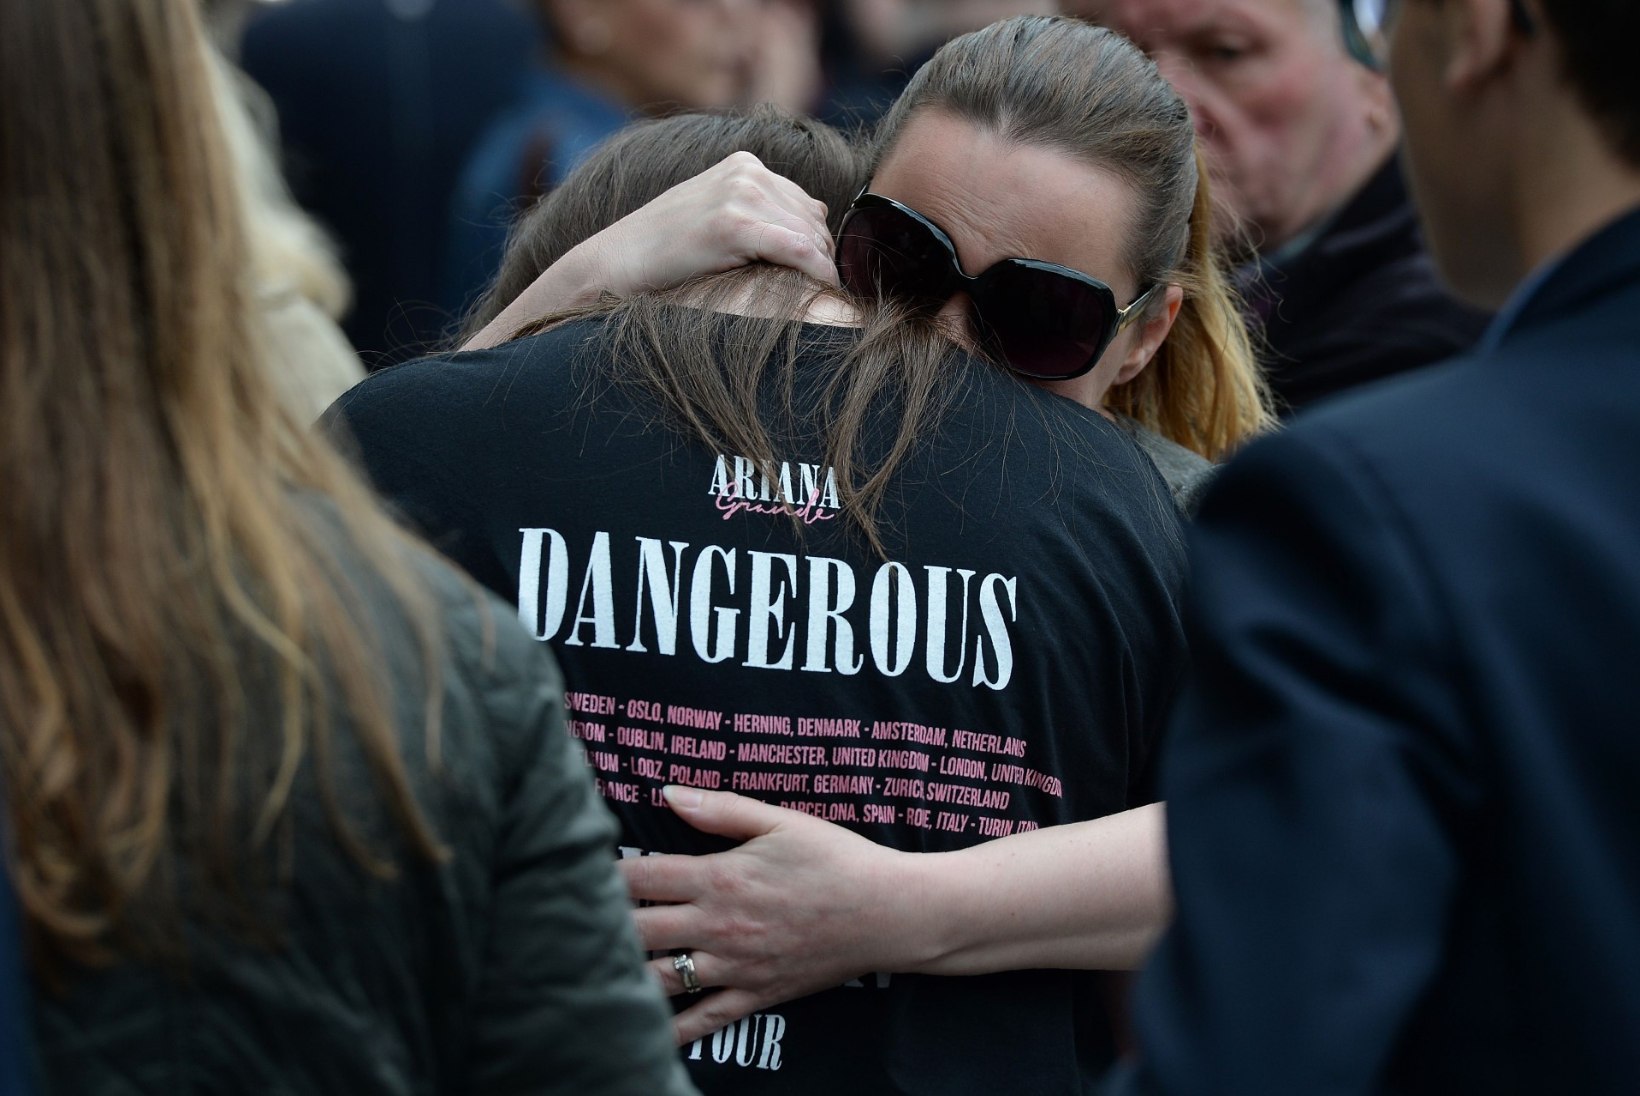 Kas Ariana Grande on lubanud tasuda Manchesteri terrorirünnaku ohvrite matusekulud?